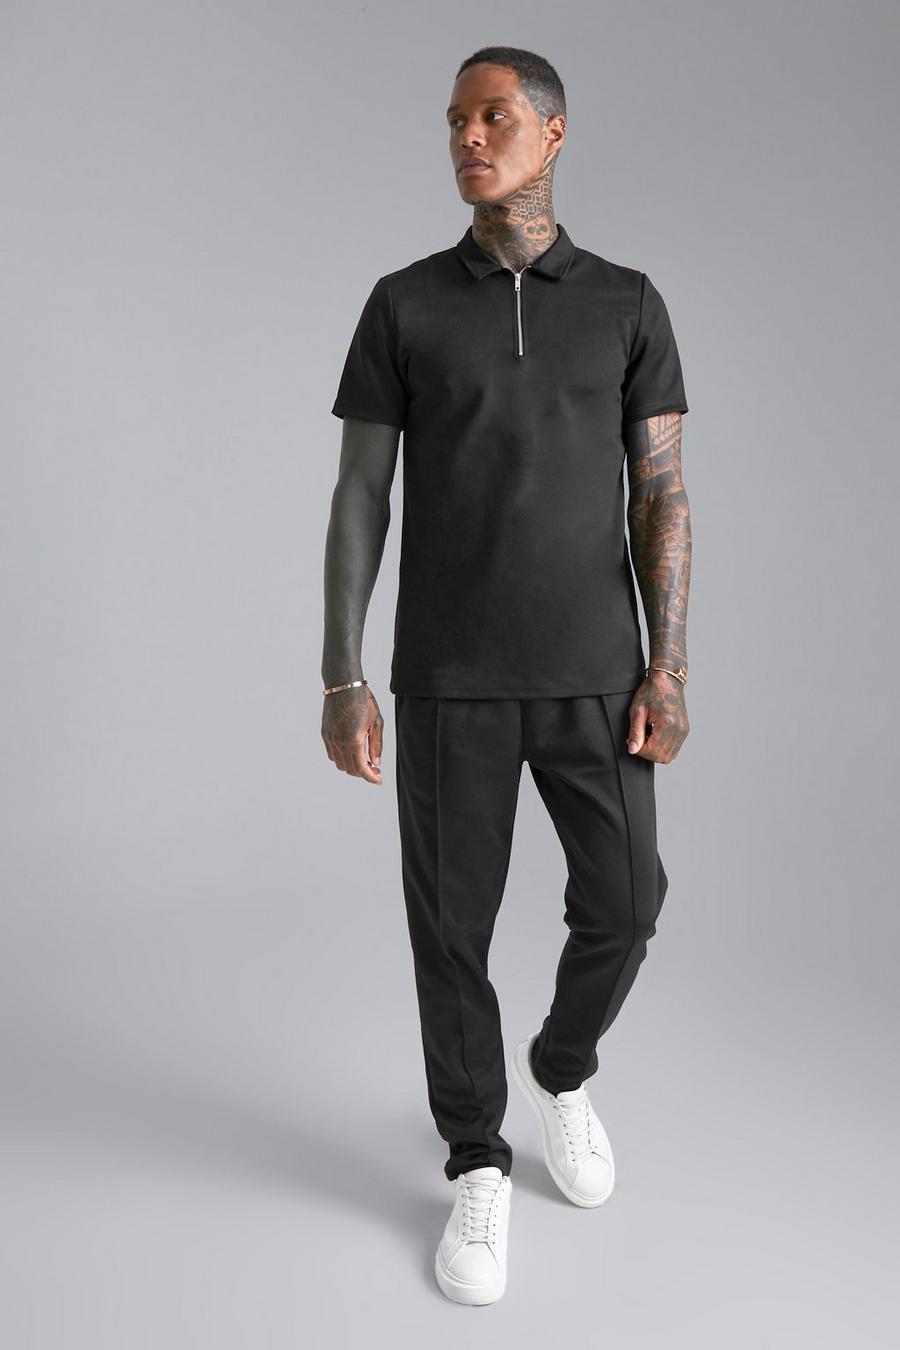 Muscle-Fit Poloshirt mit 1/4 Reißverschluss und Jogginghose, Black schwarz